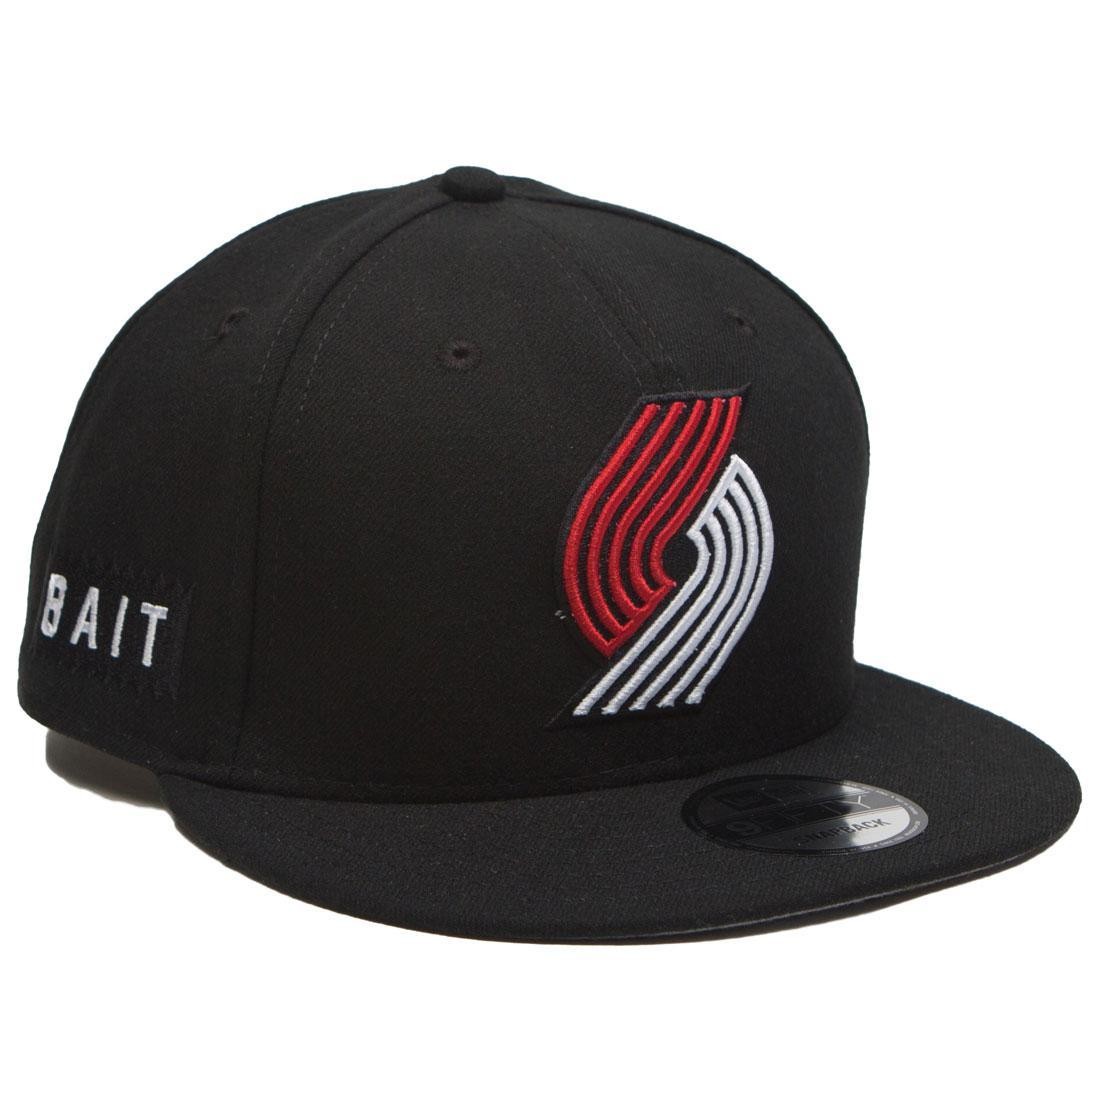 Cheap Urlfreeze Jordan Outlet x NBA X New Era 9Fifty Portland Trail Blazers OTC Snapback Cap (black)